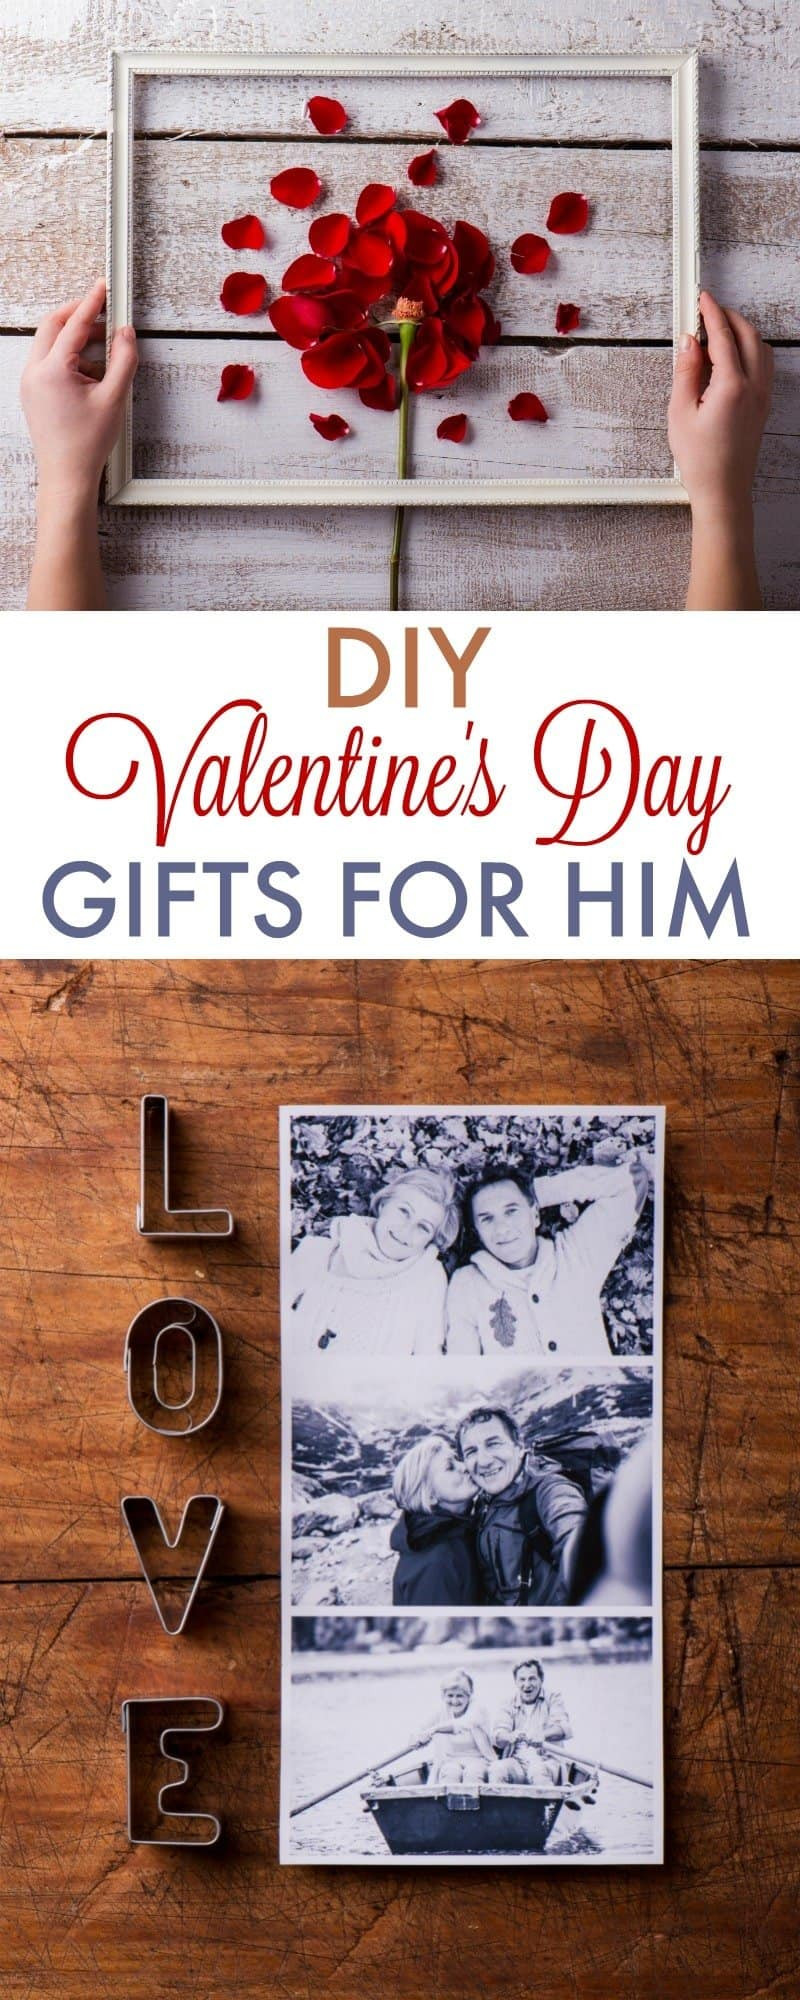 Best ideas about DIY Valentine'S Day Gifts For Boyfriend
. Save or Pin DIY Valentine s Day Gifts for Boyfriend 730 Sage Street Now.